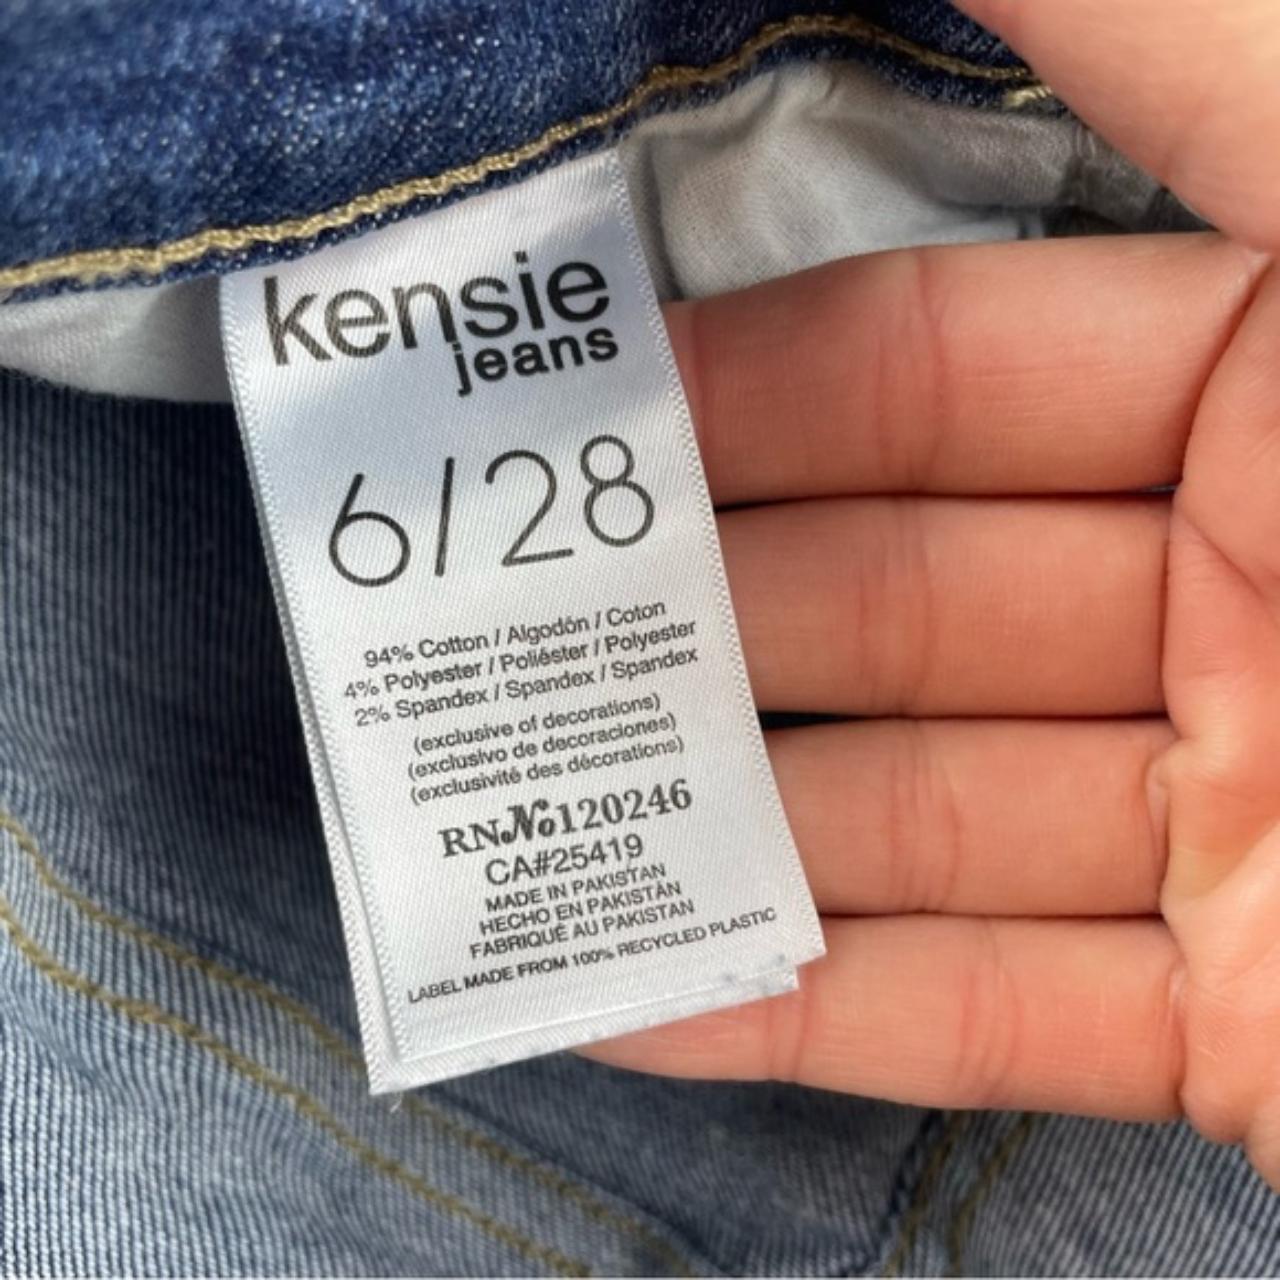 Kensie Jean Jacket  Kensie jeans, Jean jacket, Clothes design